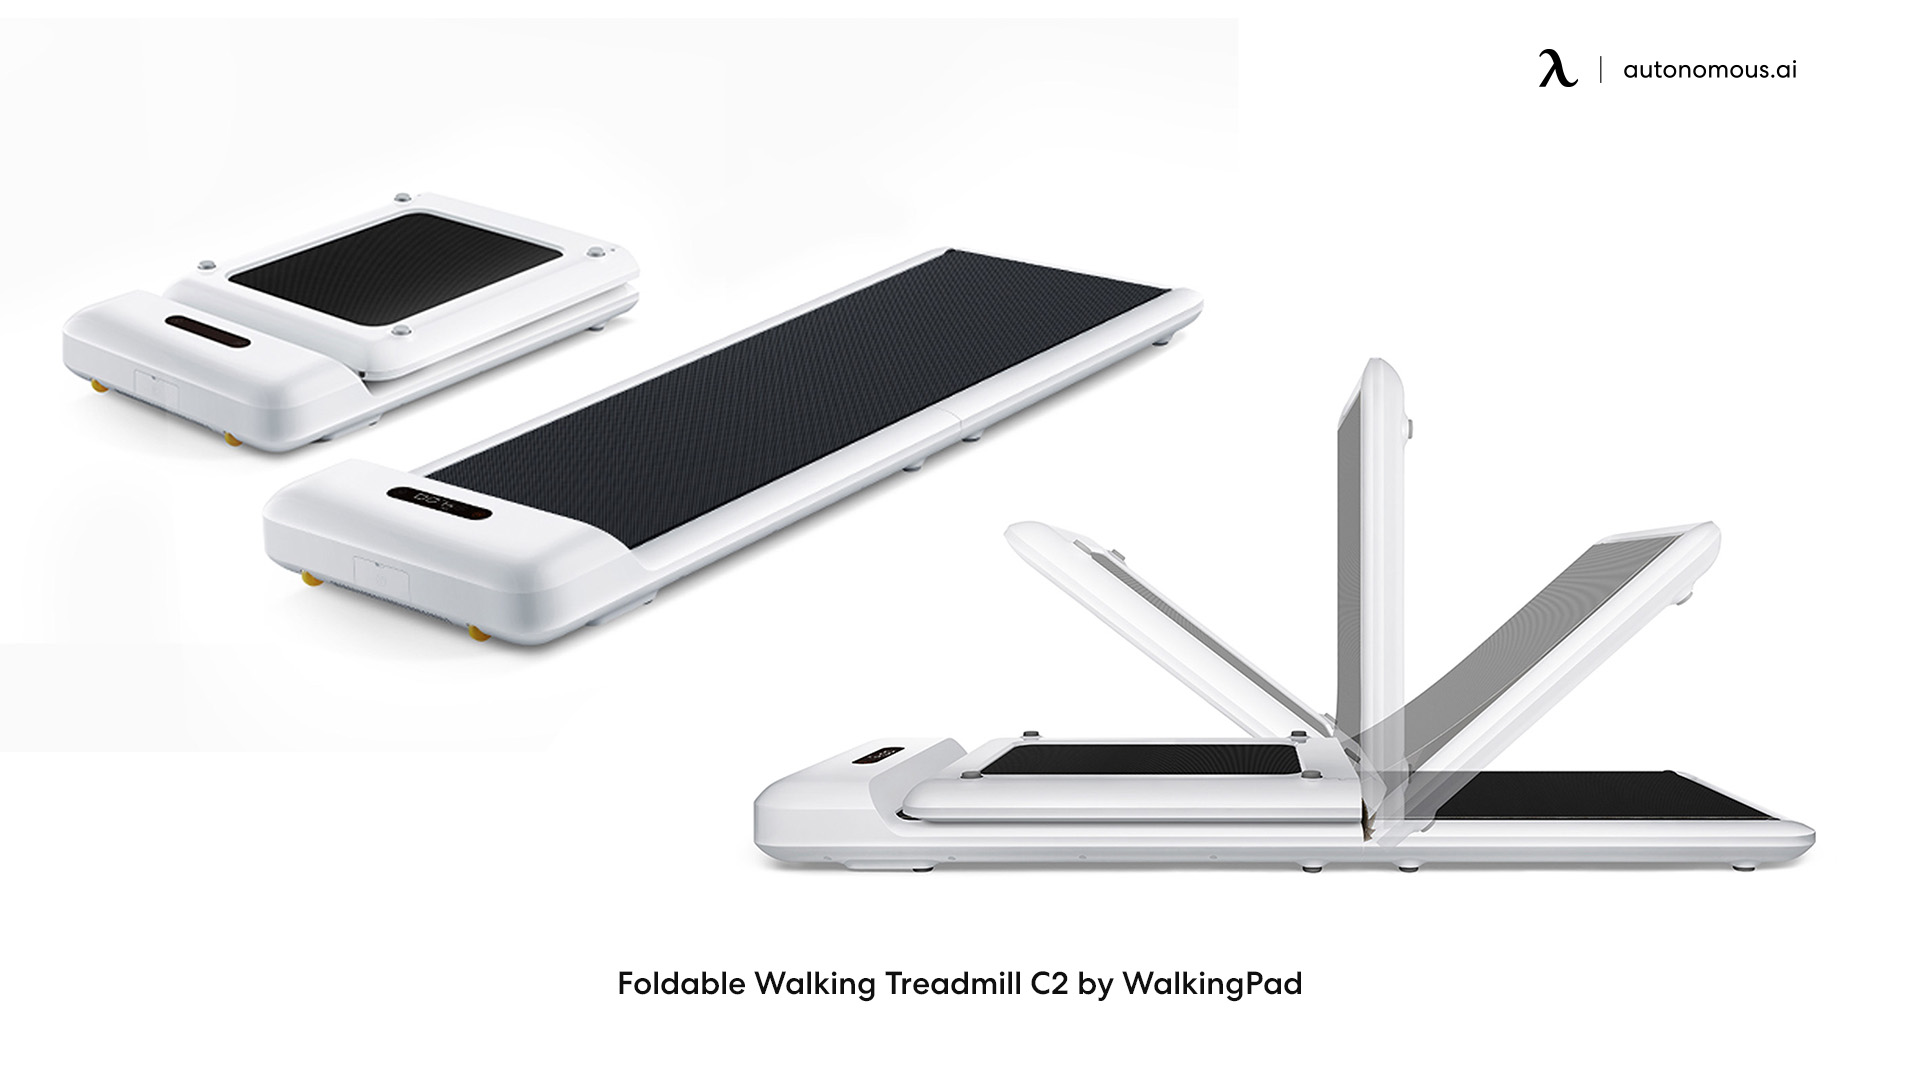 WalkingPad Folding Treadmill C2